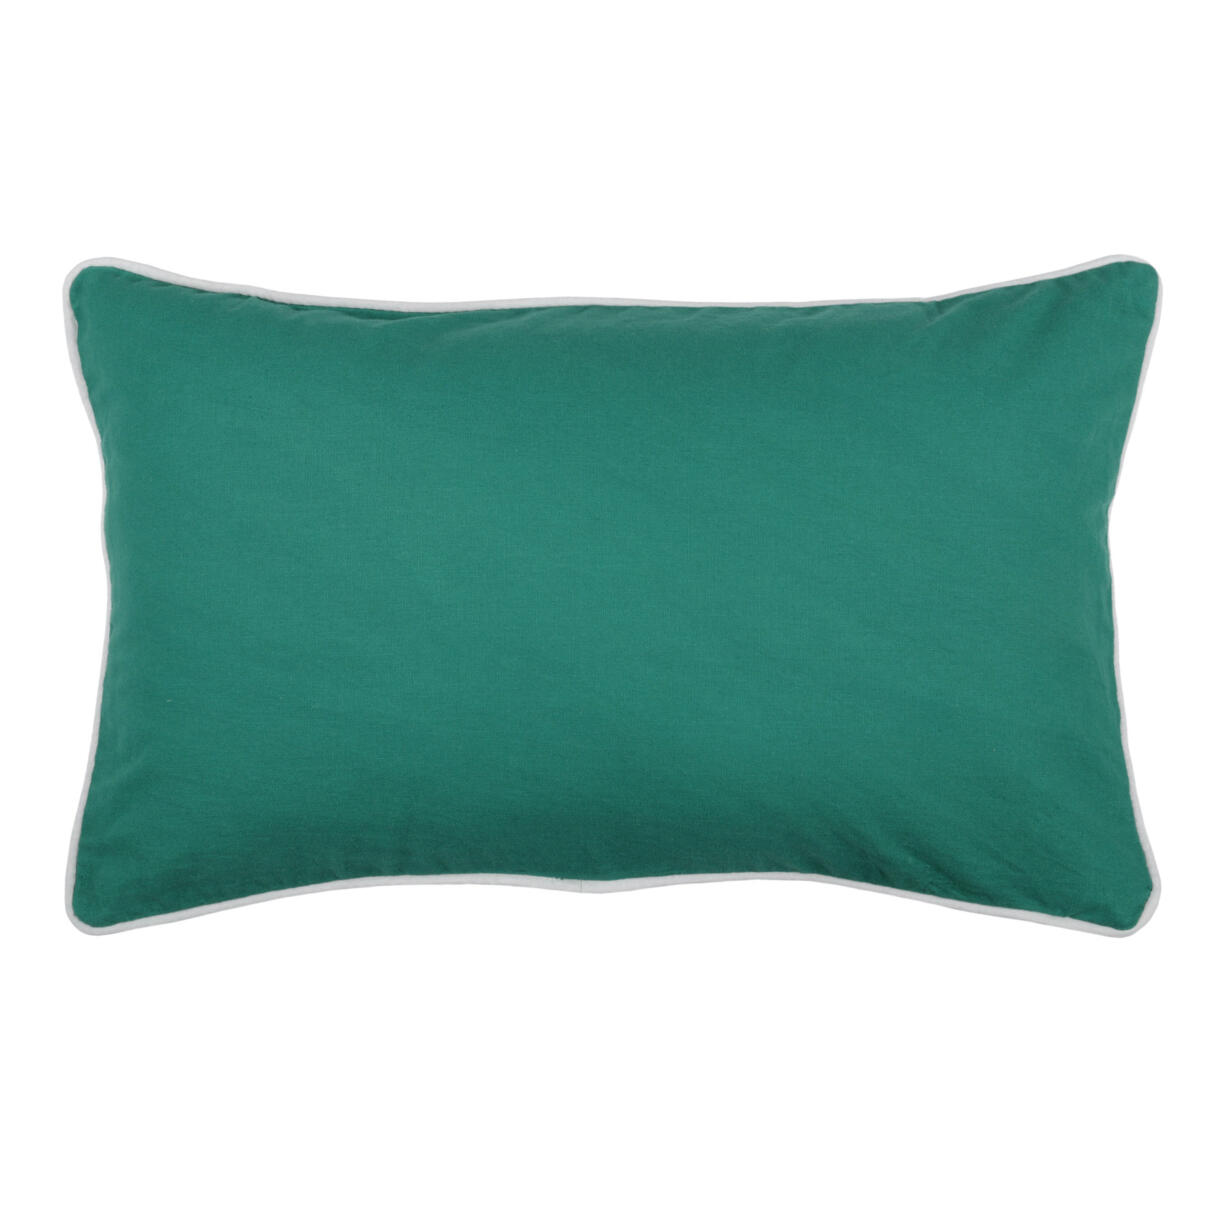 Cuscino rettangolare Duo Verde smeraldo 1